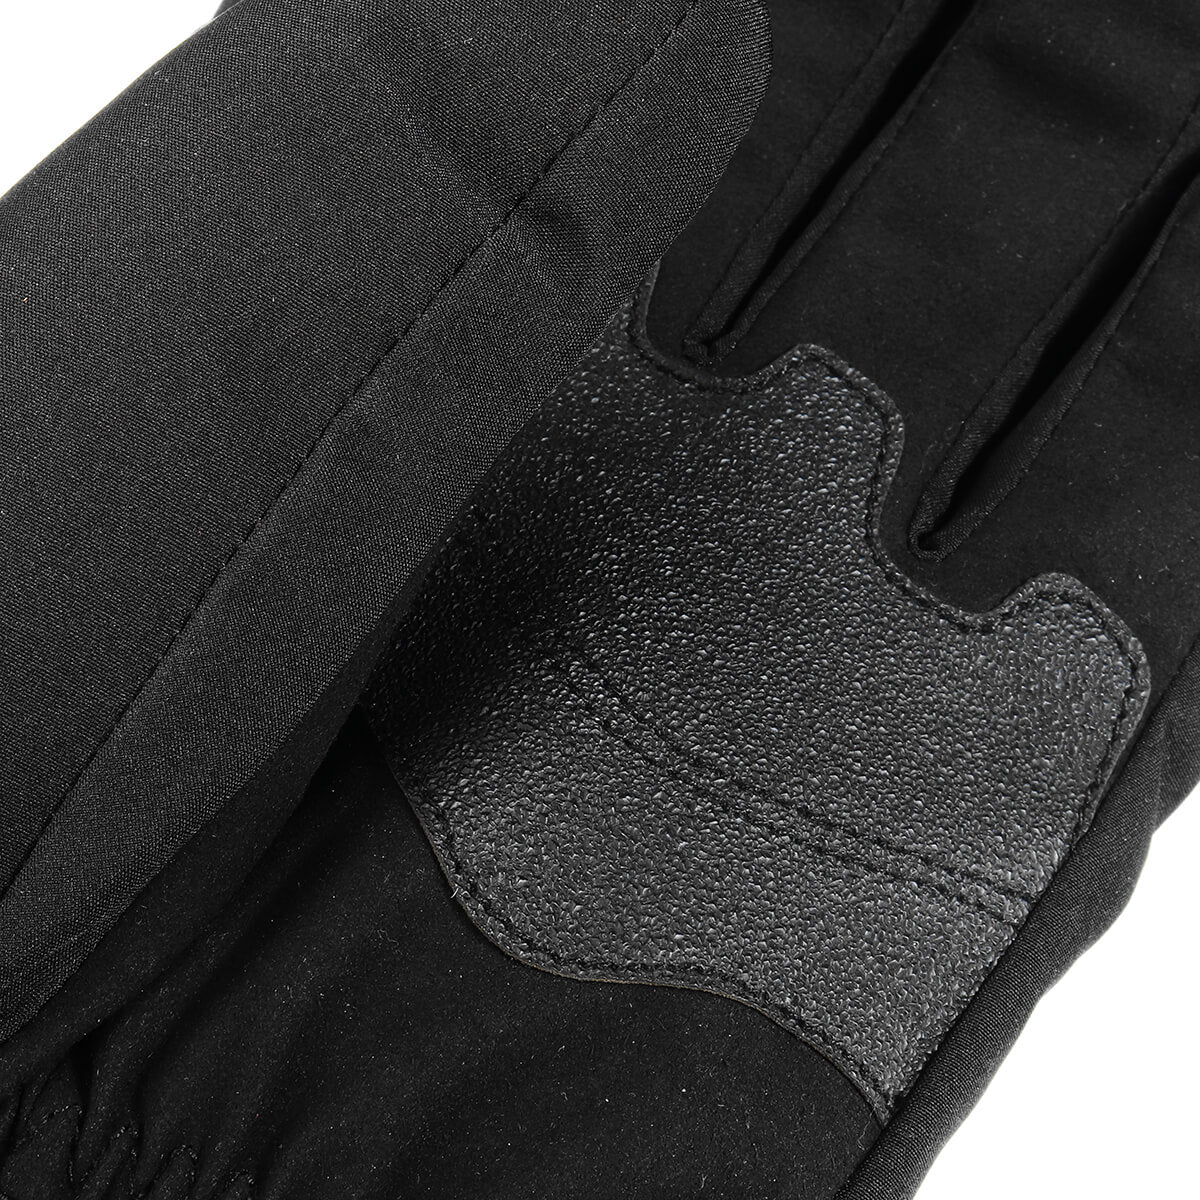 HG-02 Black Electric Heated Gloves, Waterproof Warm 1Pair